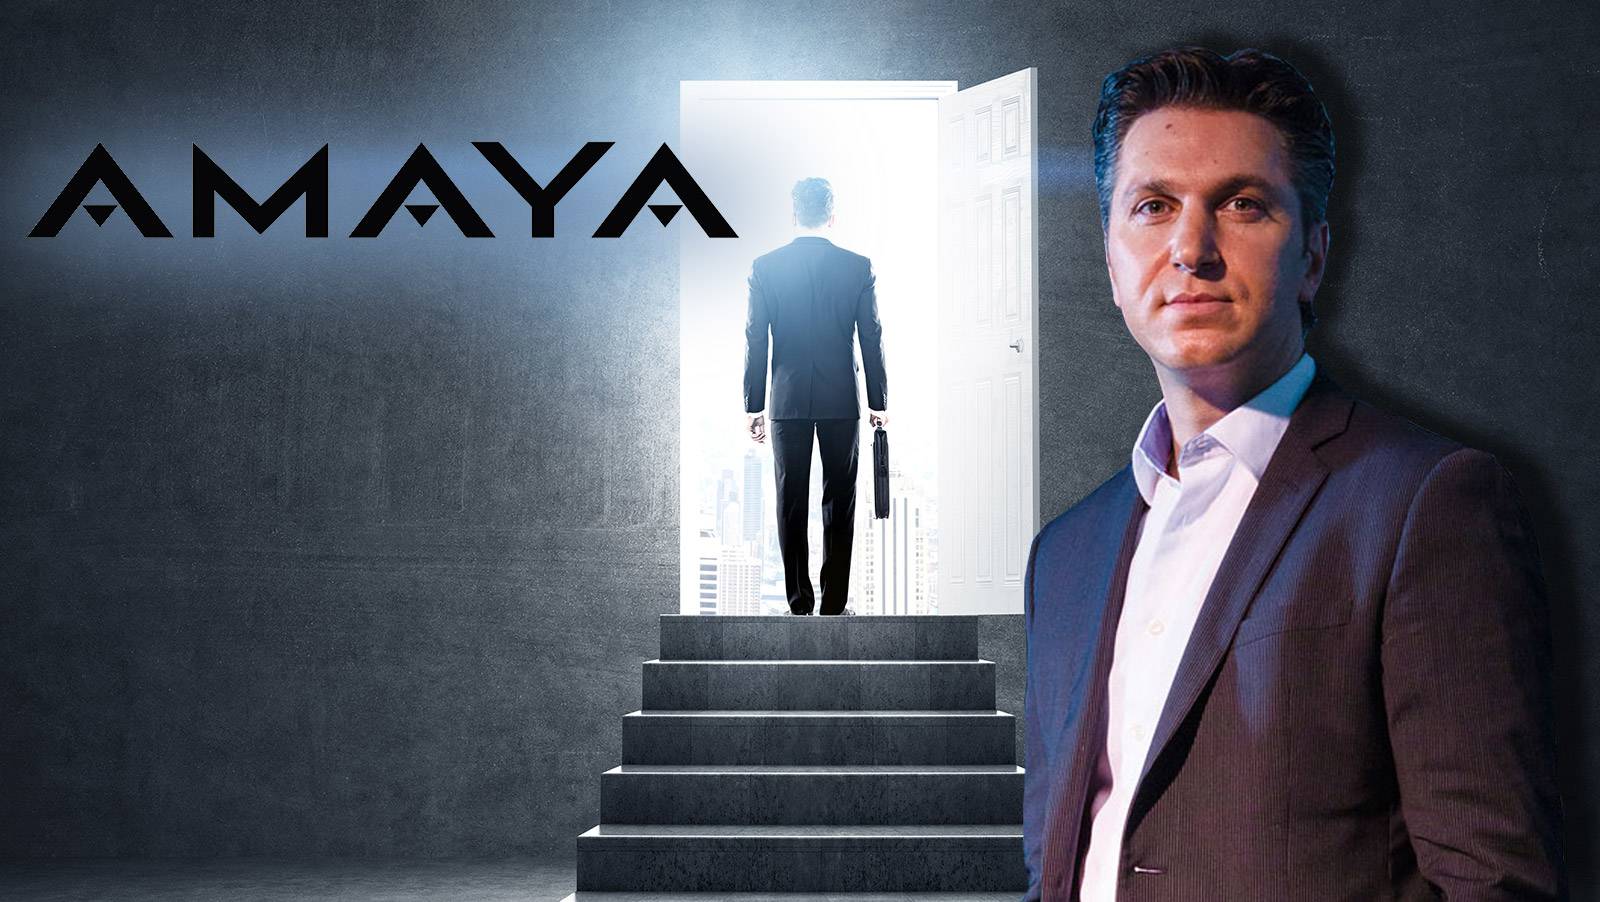 Securities watchdog says ex-Amaya CEO David Baazov was beard for brother's shares